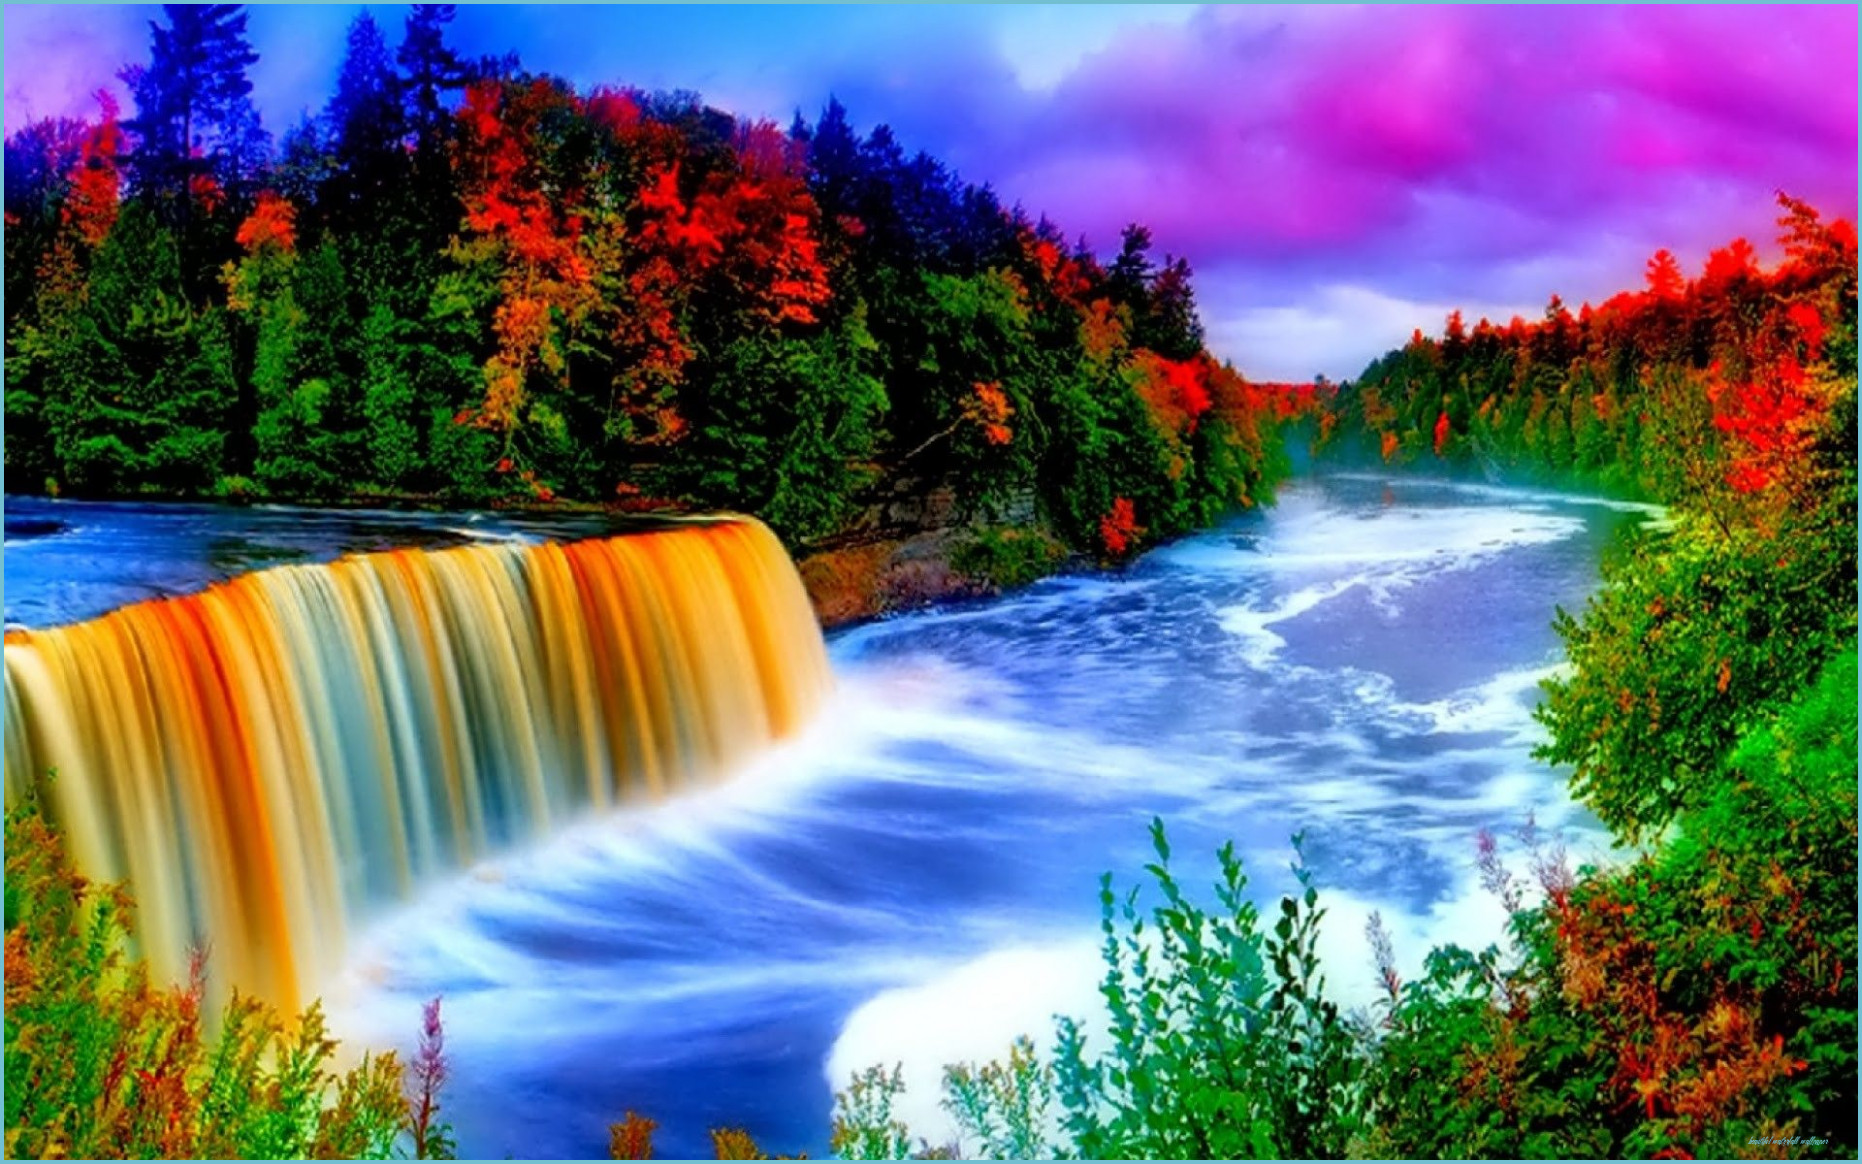 ♥﻿ღೋƸ̵̡Ӝ̵̨̄Ʒღೋ♥ Beautiful Nature Scenes, Waterfall Waterfall Wallpaper